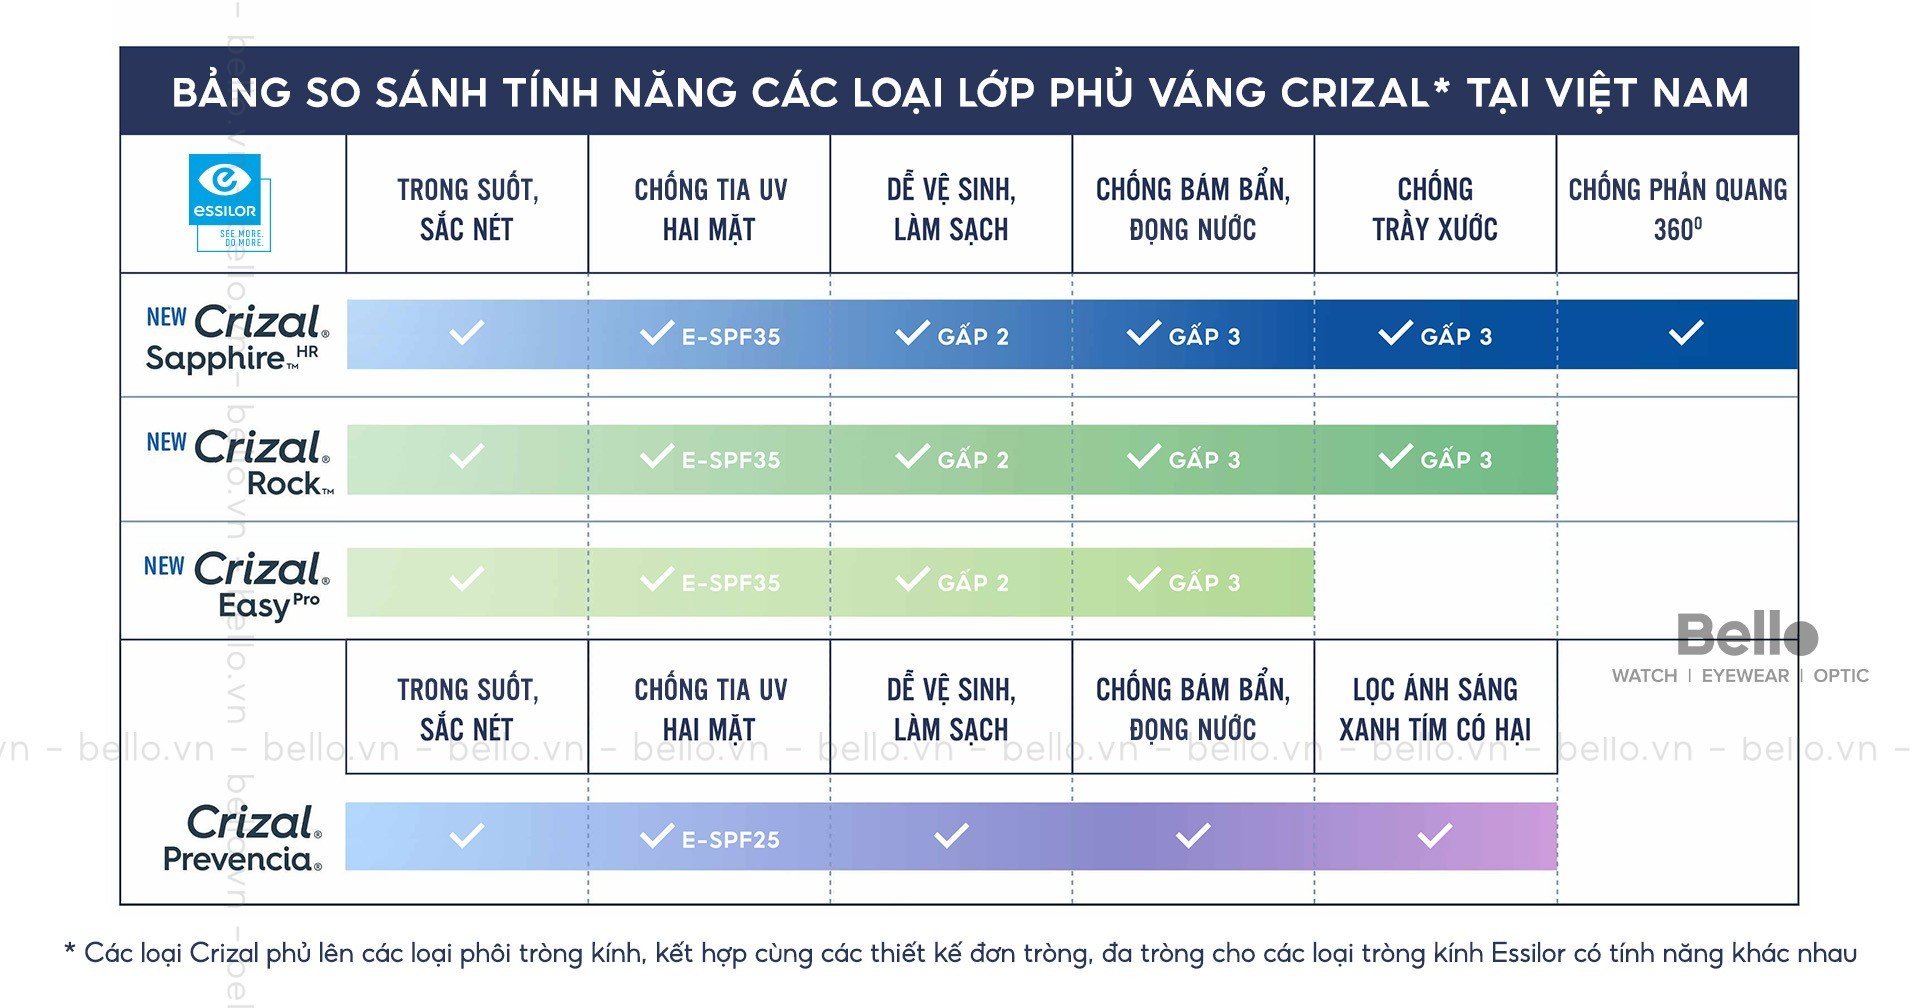 Bảng so sánh tính năng các loại váng phủ Crizal tại Việt Nam bởi Sơn Trần Bello